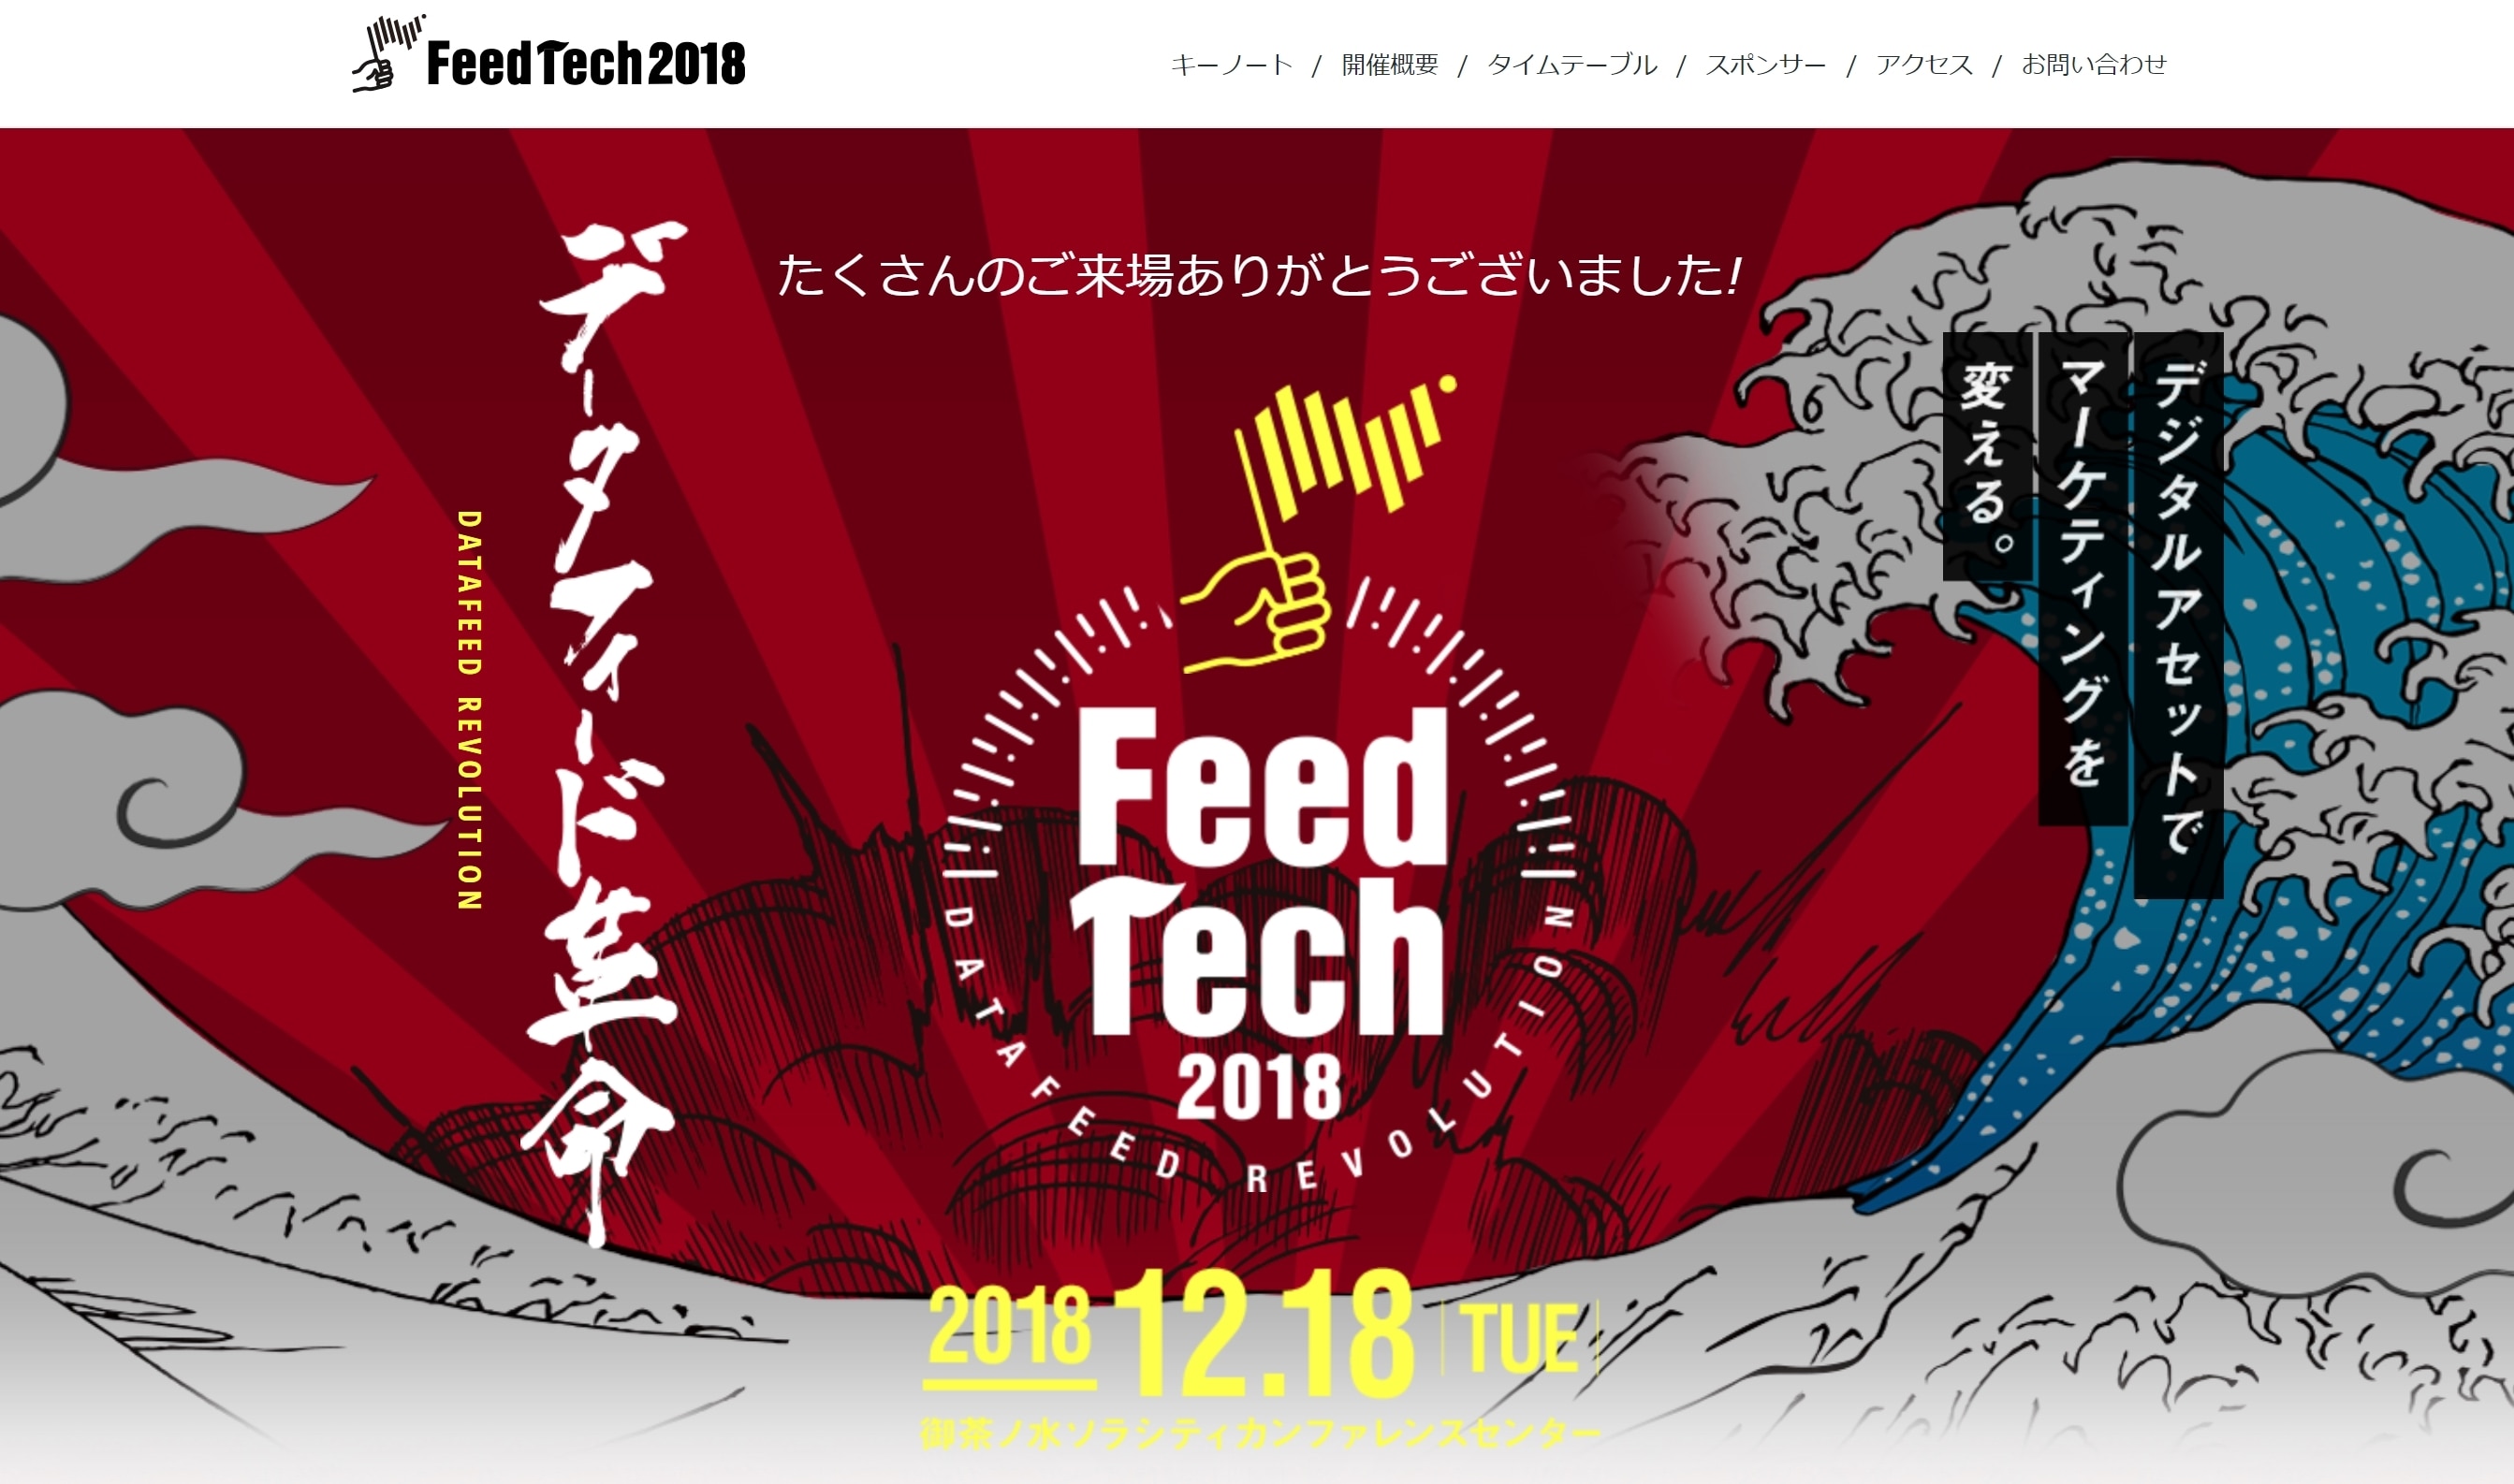 FeedTech